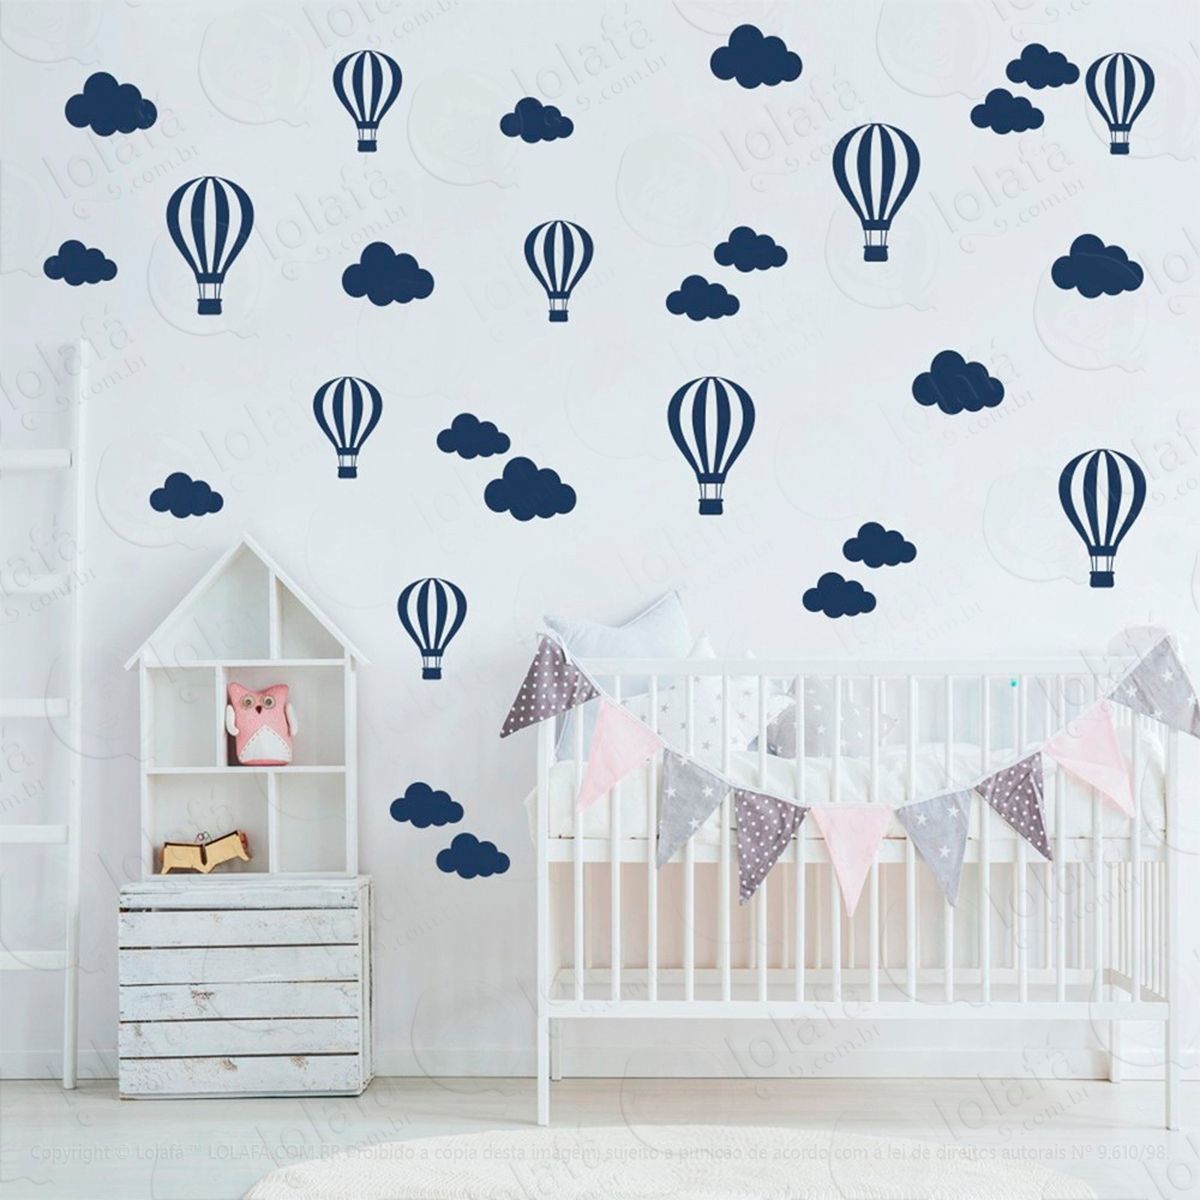 adesivos nuvens e balões 50 peças adesivos para quarto de bebê infantil - mod:834